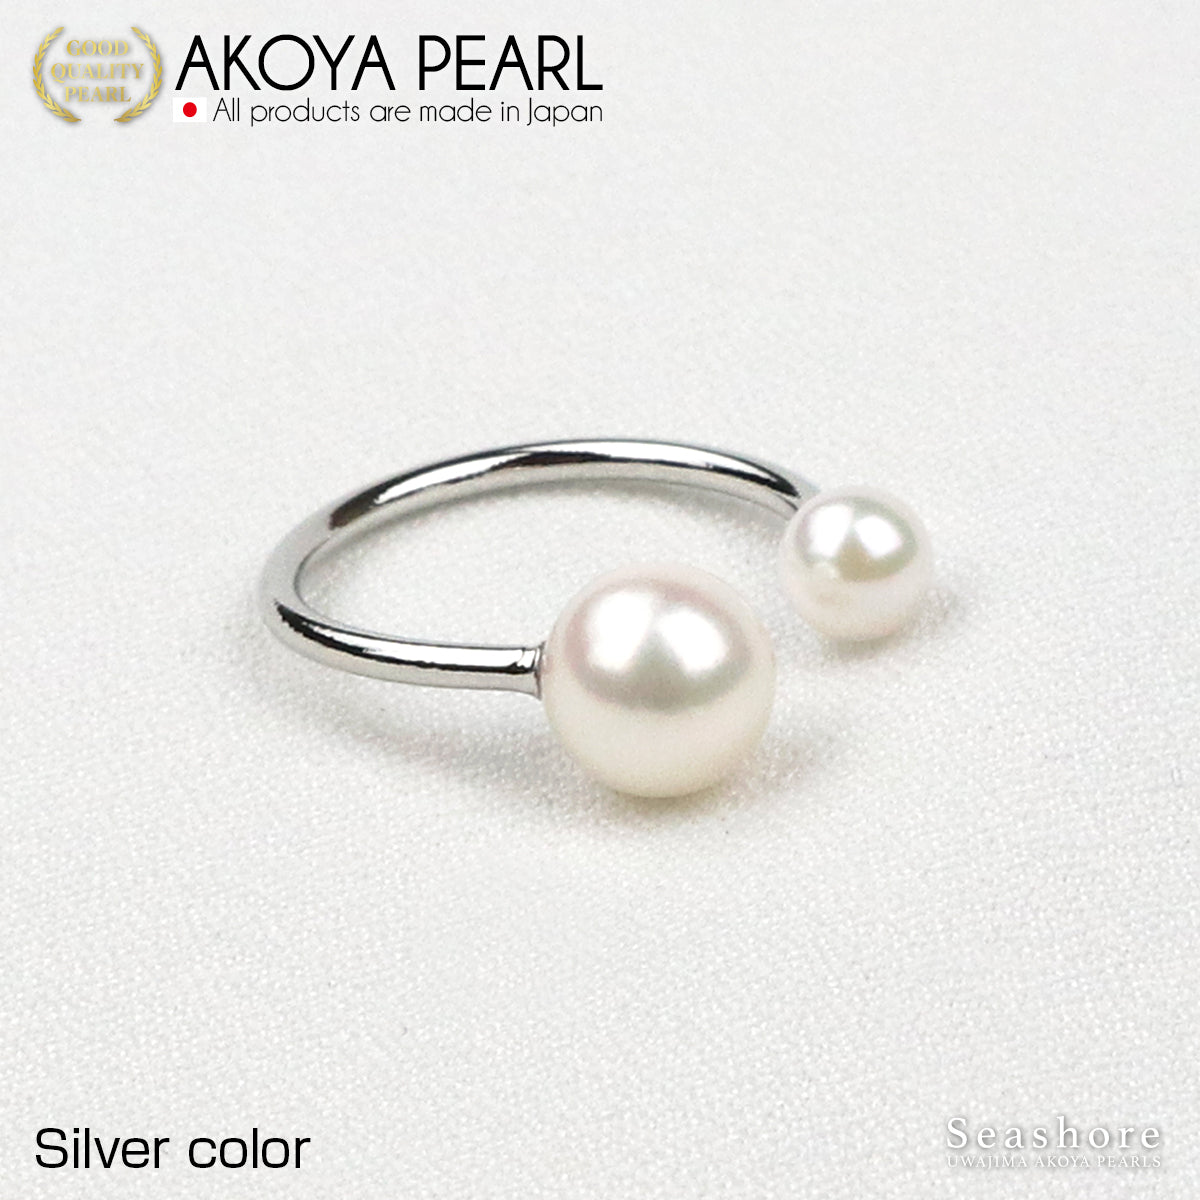 2 珠珍珠戒指 3 色黄铜铑/粉红金/金色 5.0-8.5 毫米 Akoya 珍珠民间戒指均码